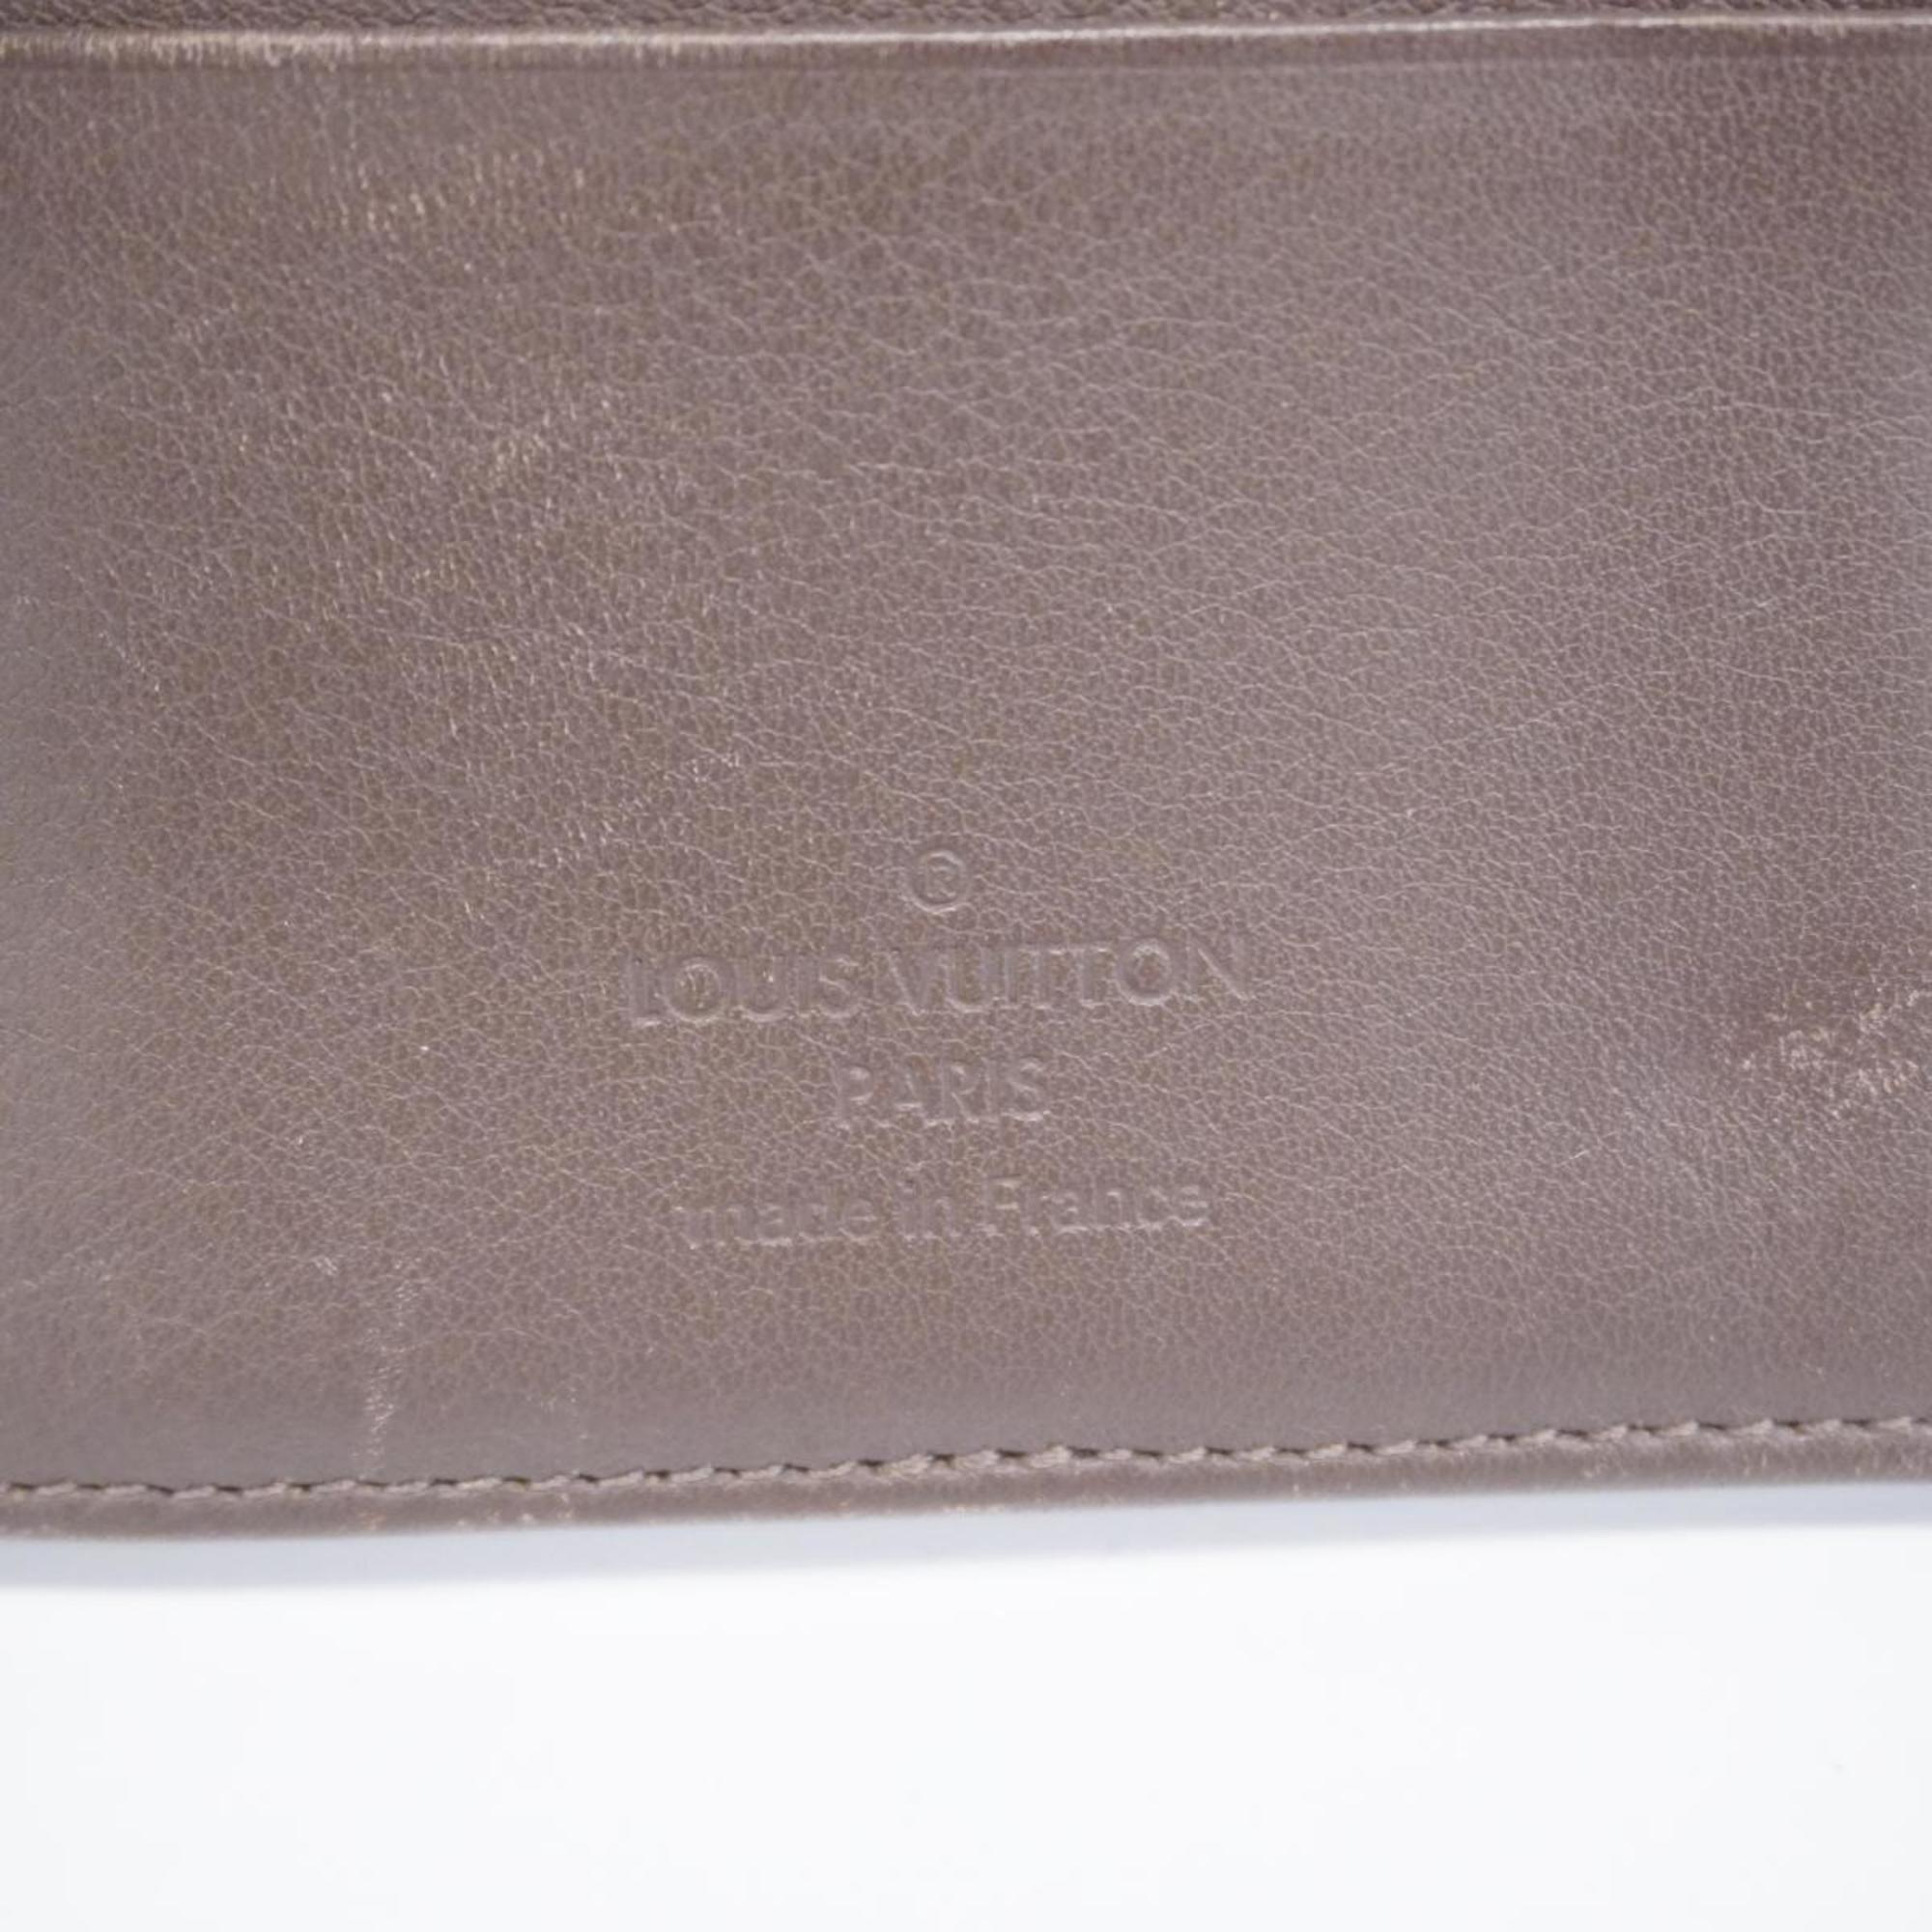 ルイ・ヴィトン(Louis Vuitton) ルイ・ヴィトン 三つ折り長財布 マヒナ ポルトフォイユアメリア M58125 アカジューメンズ レディース